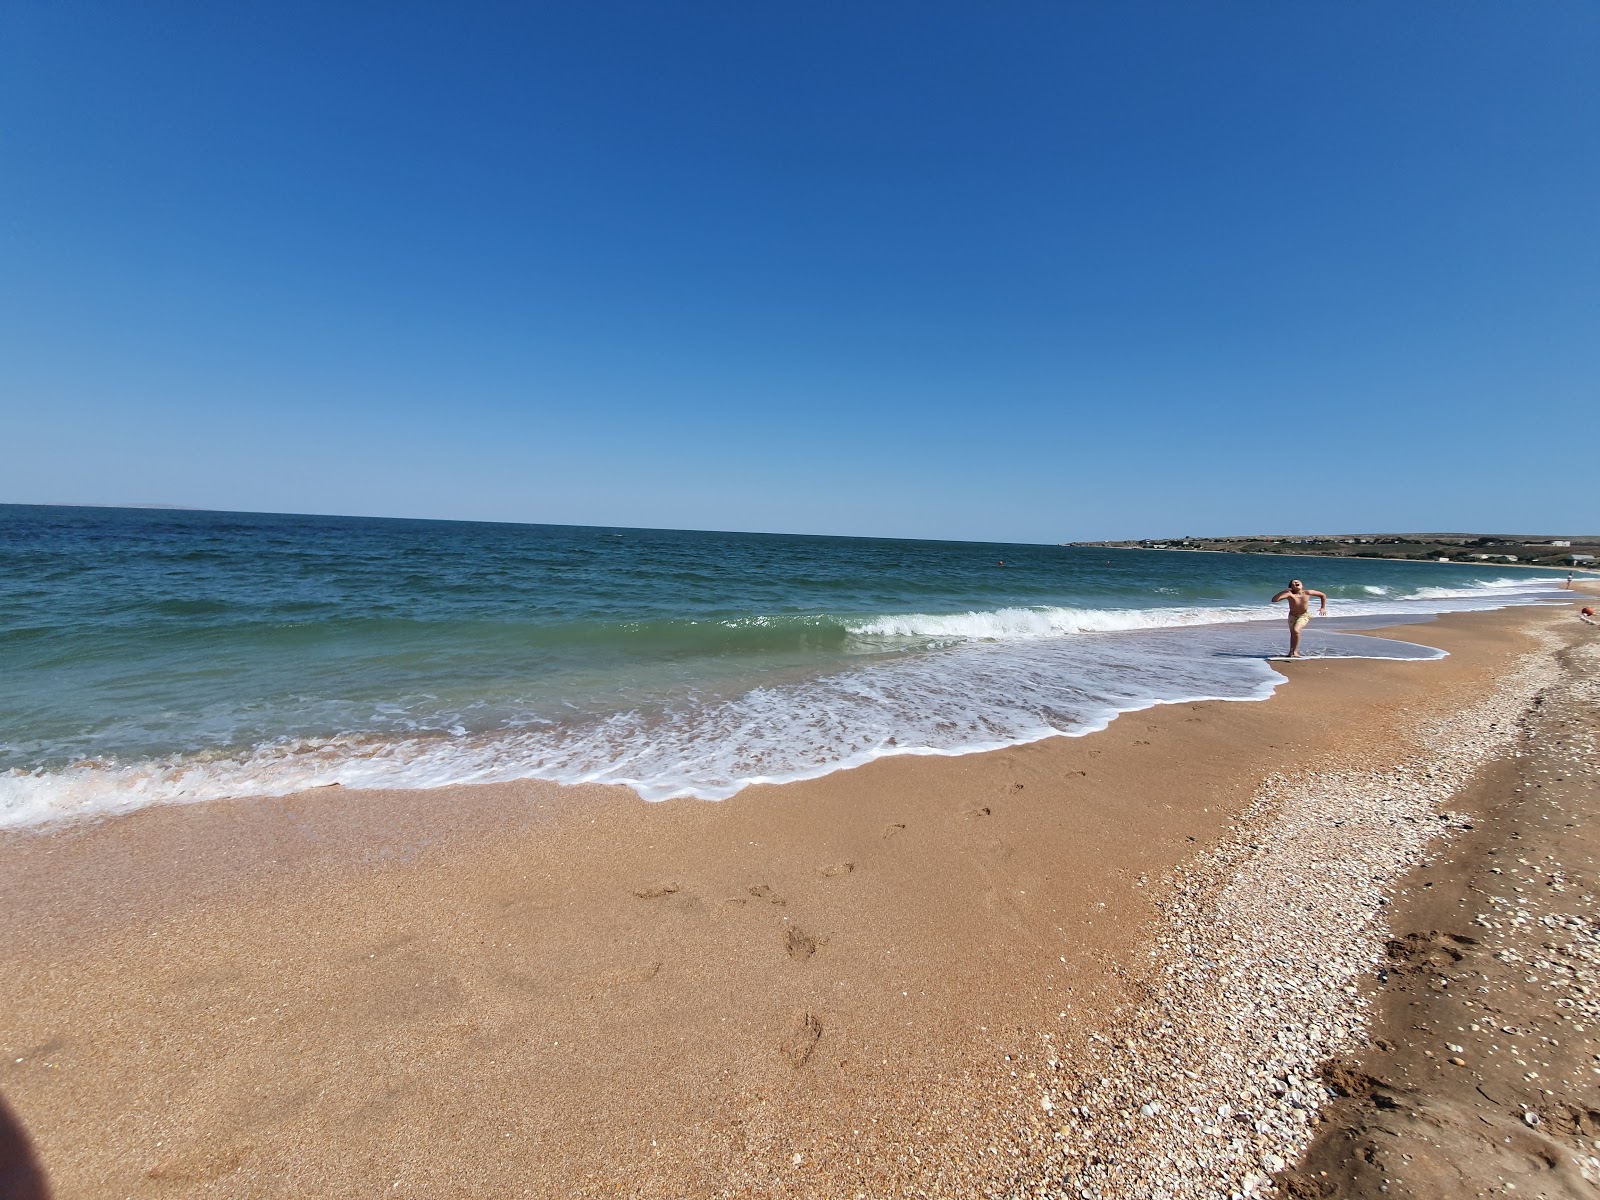 Plyazh Zolotoye'in fotoğrafı geniş plaj ile birlikte